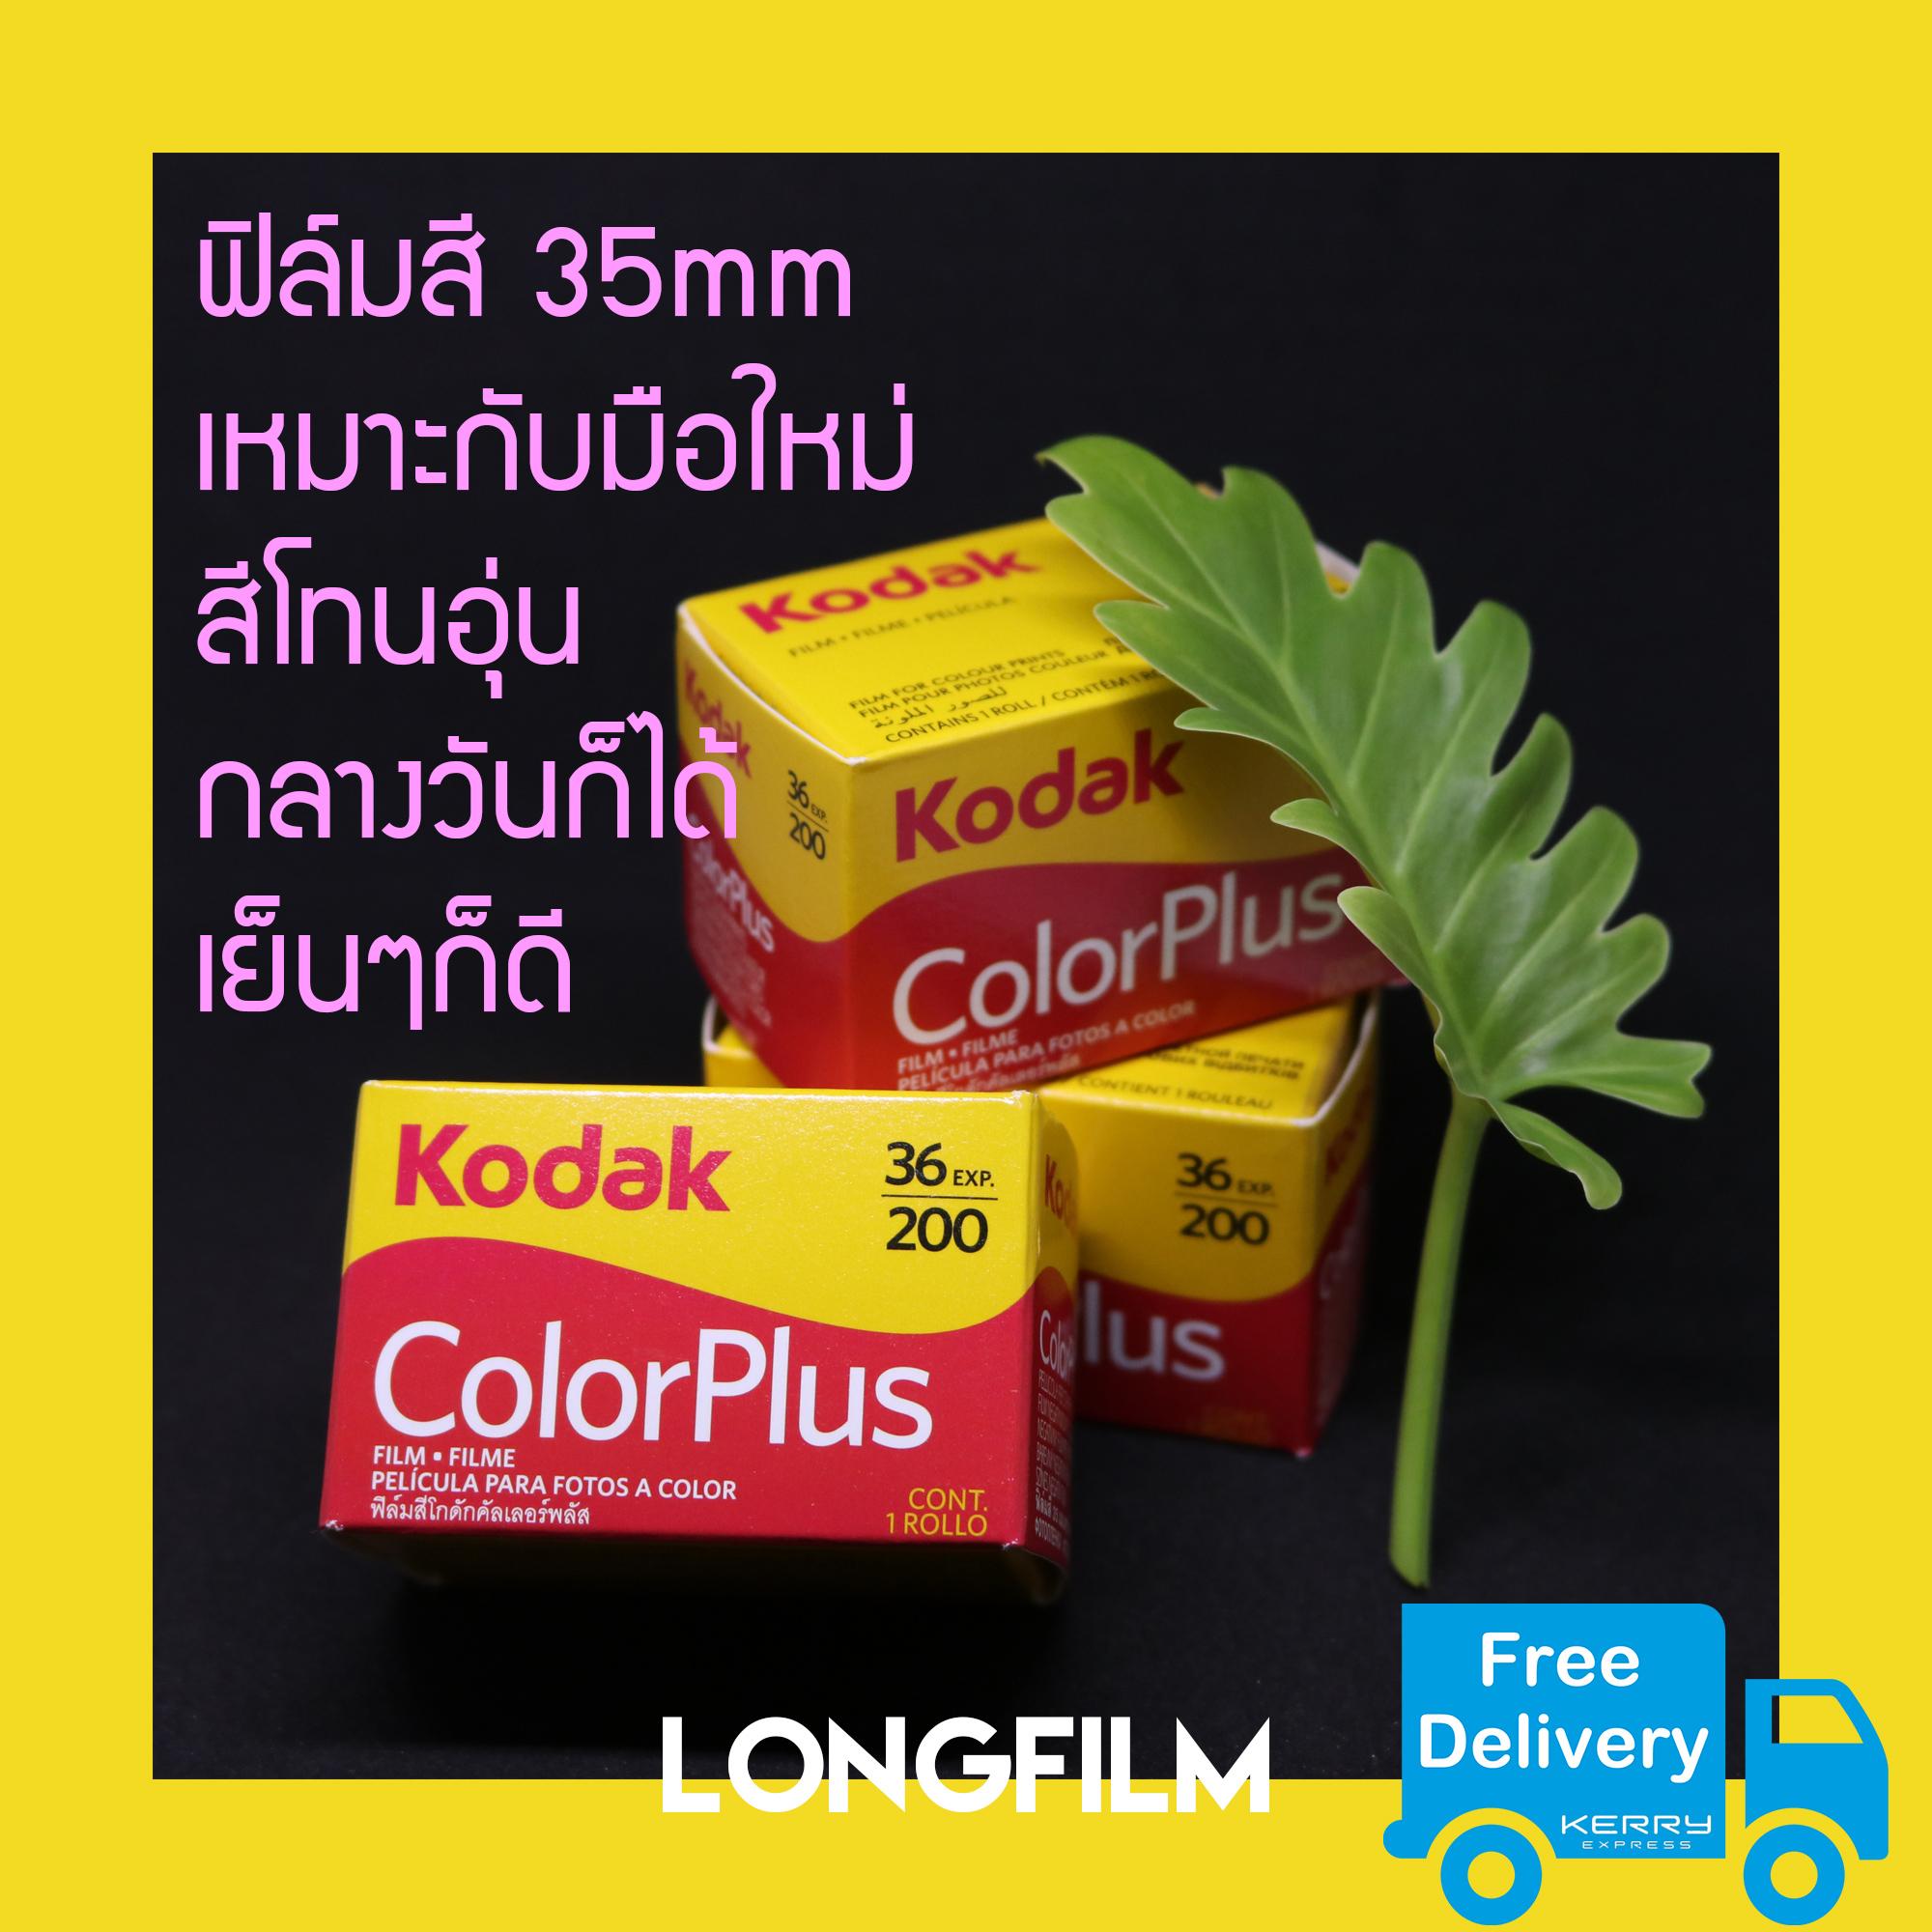 ฟิล์มถ่ายรูป Kodak ColorPlus 200  ฟิล์มโกดักคัลเลอร์ FilmKodak Kodak color Plus iso200 36รูป กล่องสีเหลือง Film35mm ฟิล์ม ฟิล์มใหม่ ฟิมถ่ายรูป ฟิล์มโกดัก Analog Camera